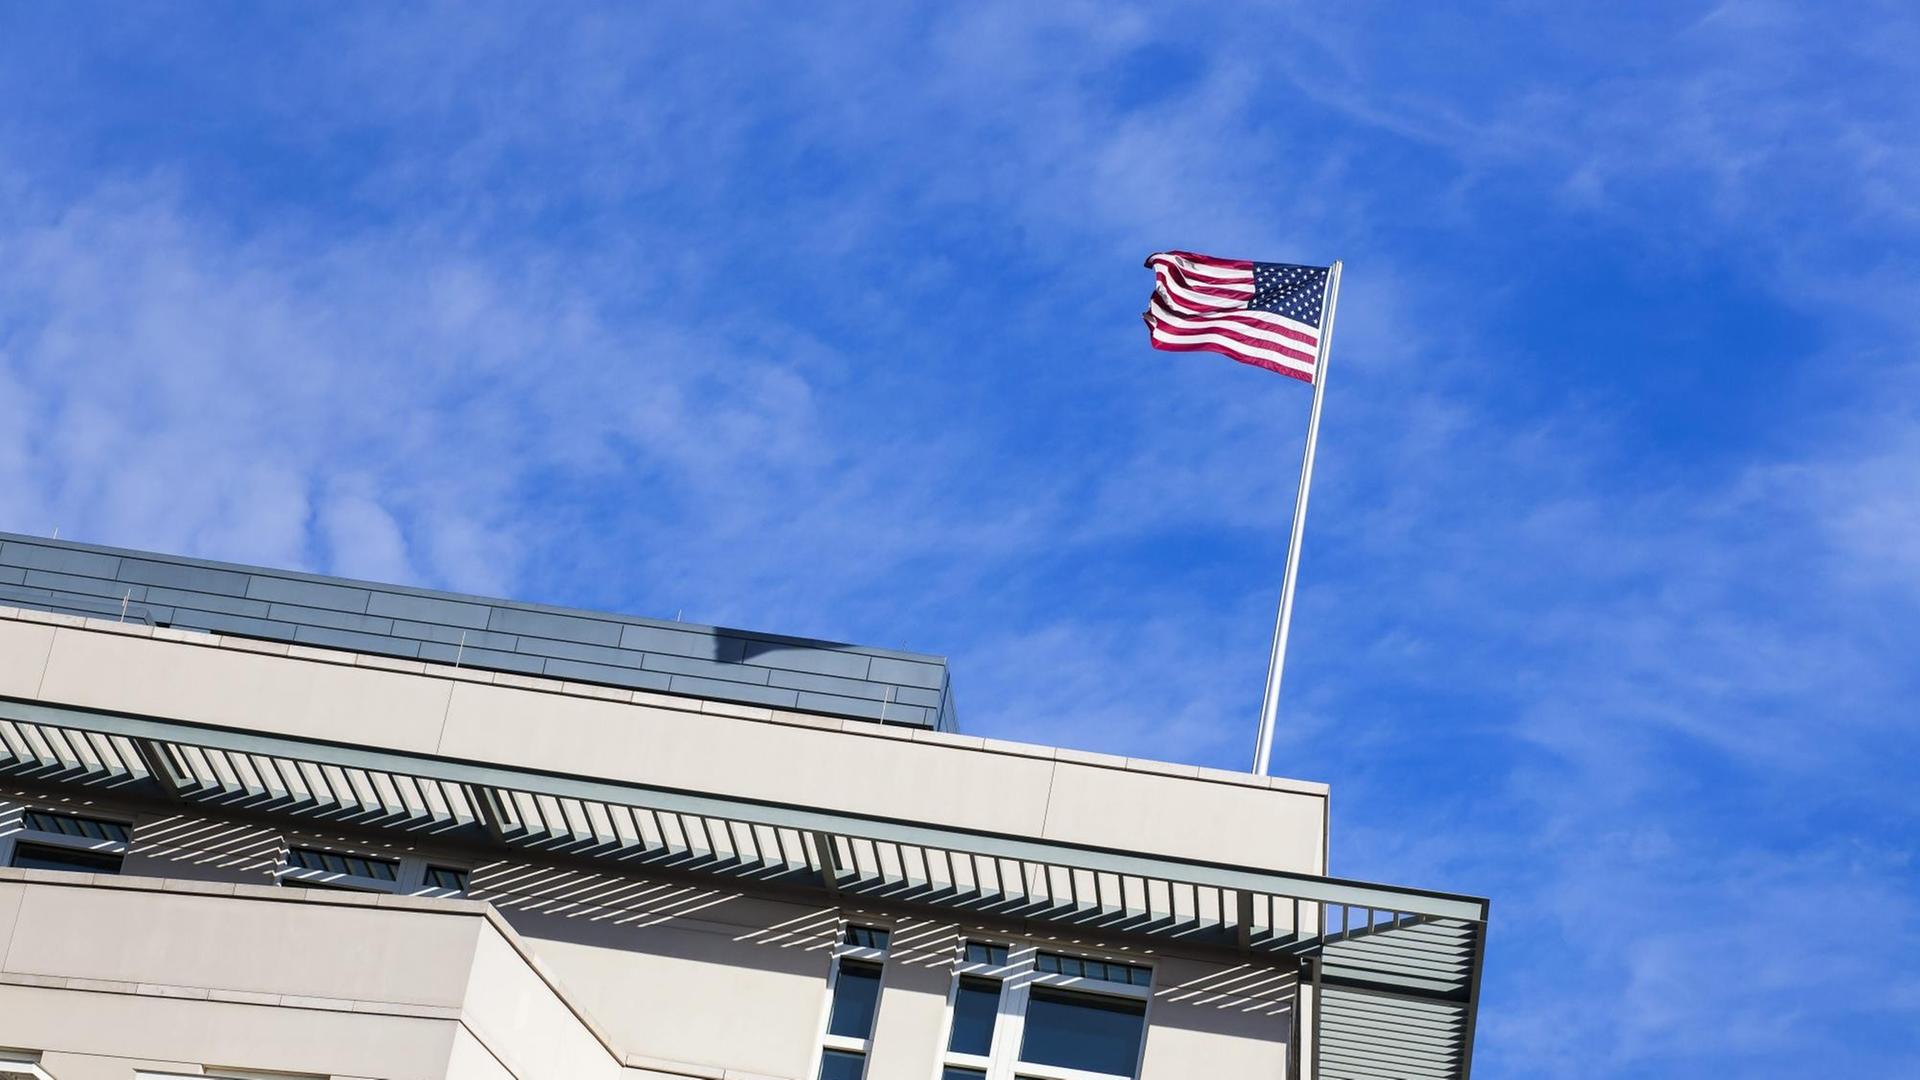 Auf einem Gebäude ist eine USA-Fahne, die im Wind weht.